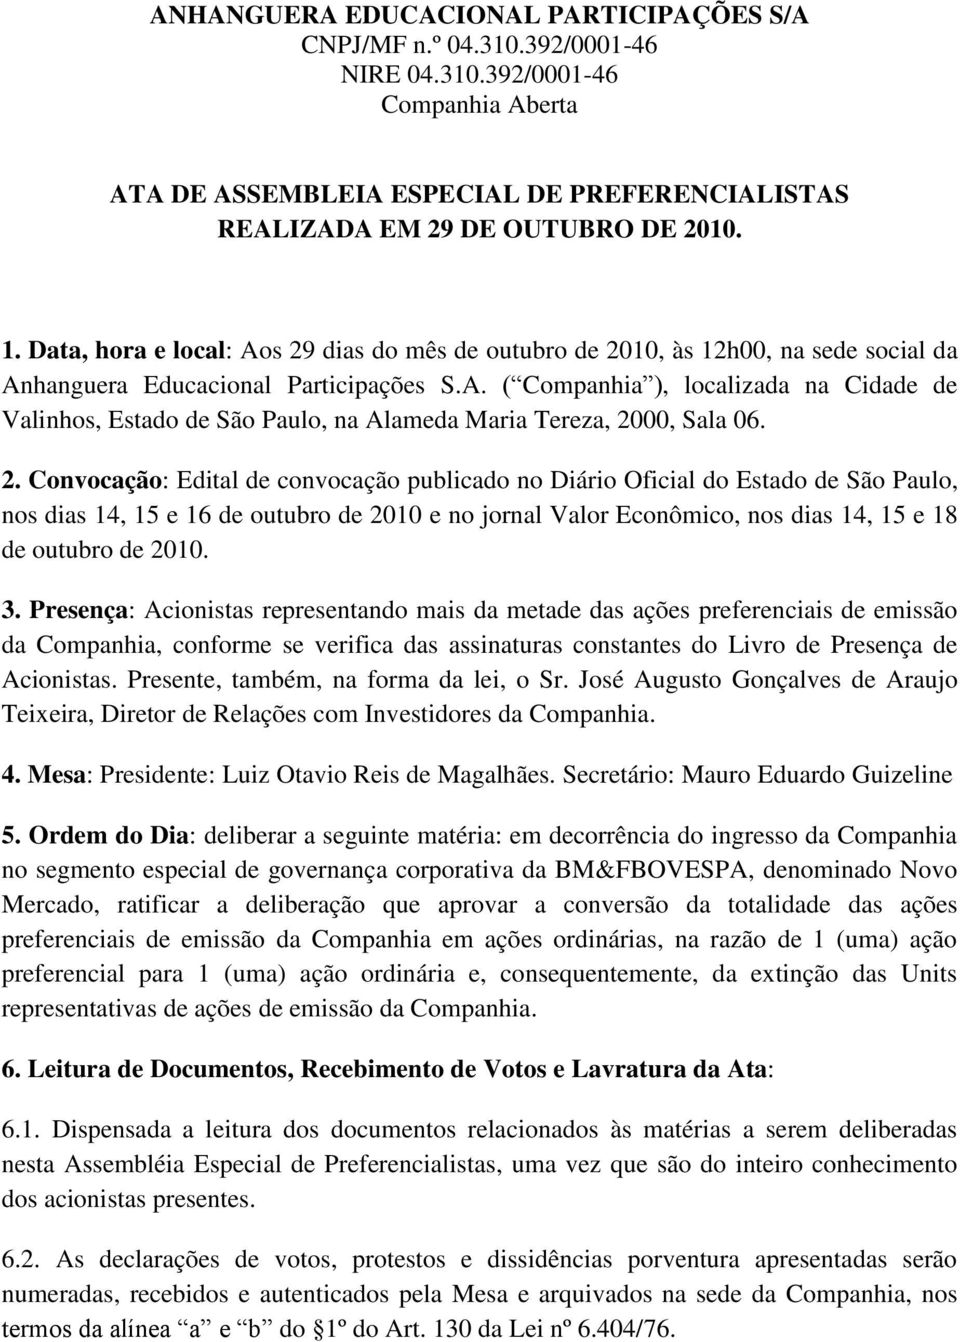 2. Convocação: Edital de convocação publicado no Diário Oficial do Estado de São Paulo, nos dias 14, 15 e 16 de outubro de 2010 e no jornal Valor Econômico, nos dias 14, 15 e 18 de outubro de 2010. 3.